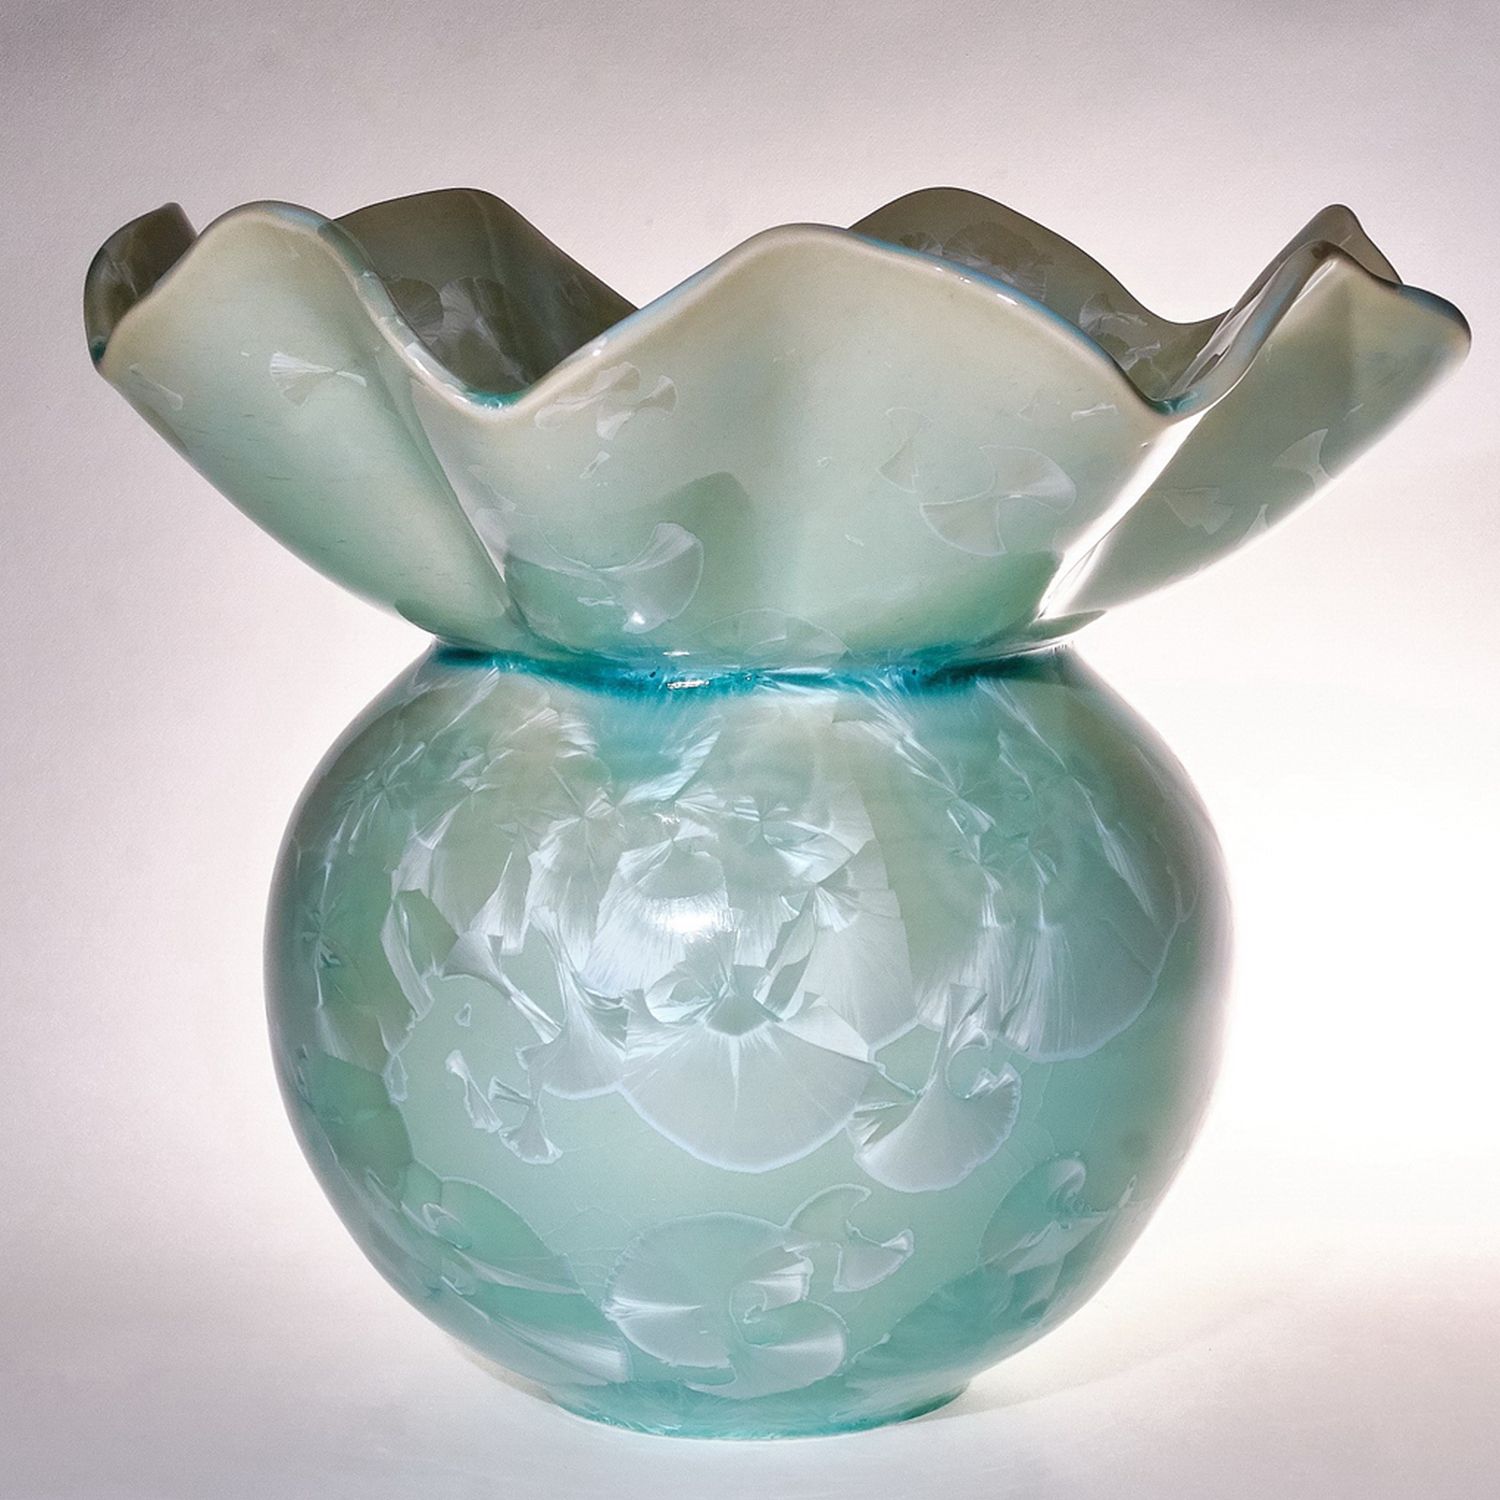 Yumiko Katsuya: Light Turquoise Flared Vase Product Image 1 of 2